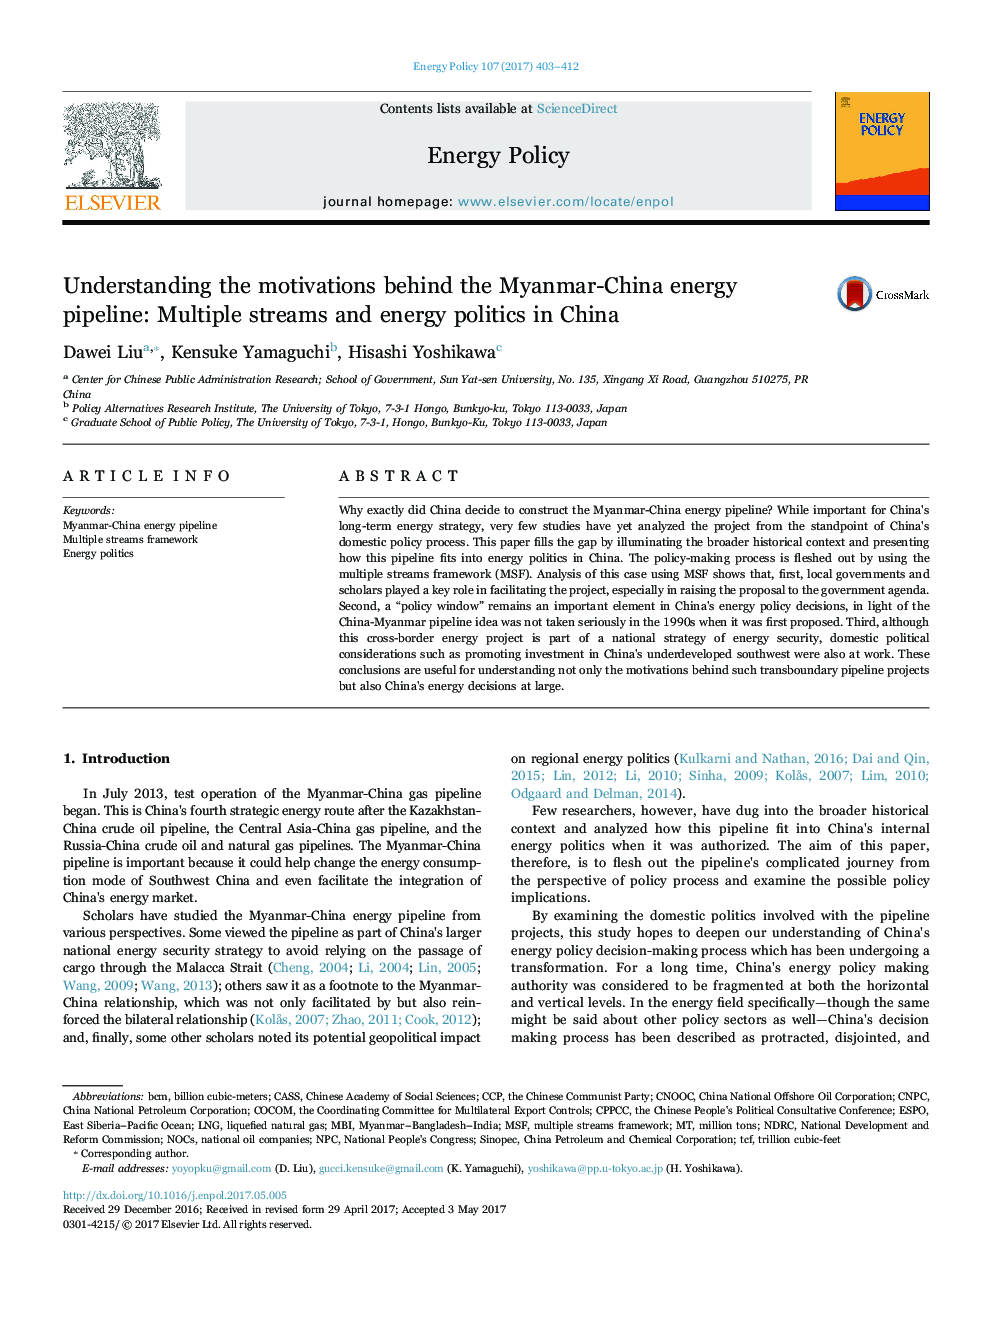 درک انگیزه های خط لوله انرژی میانمار و چین: چندین جریان و سیاست های انرژی در چین 